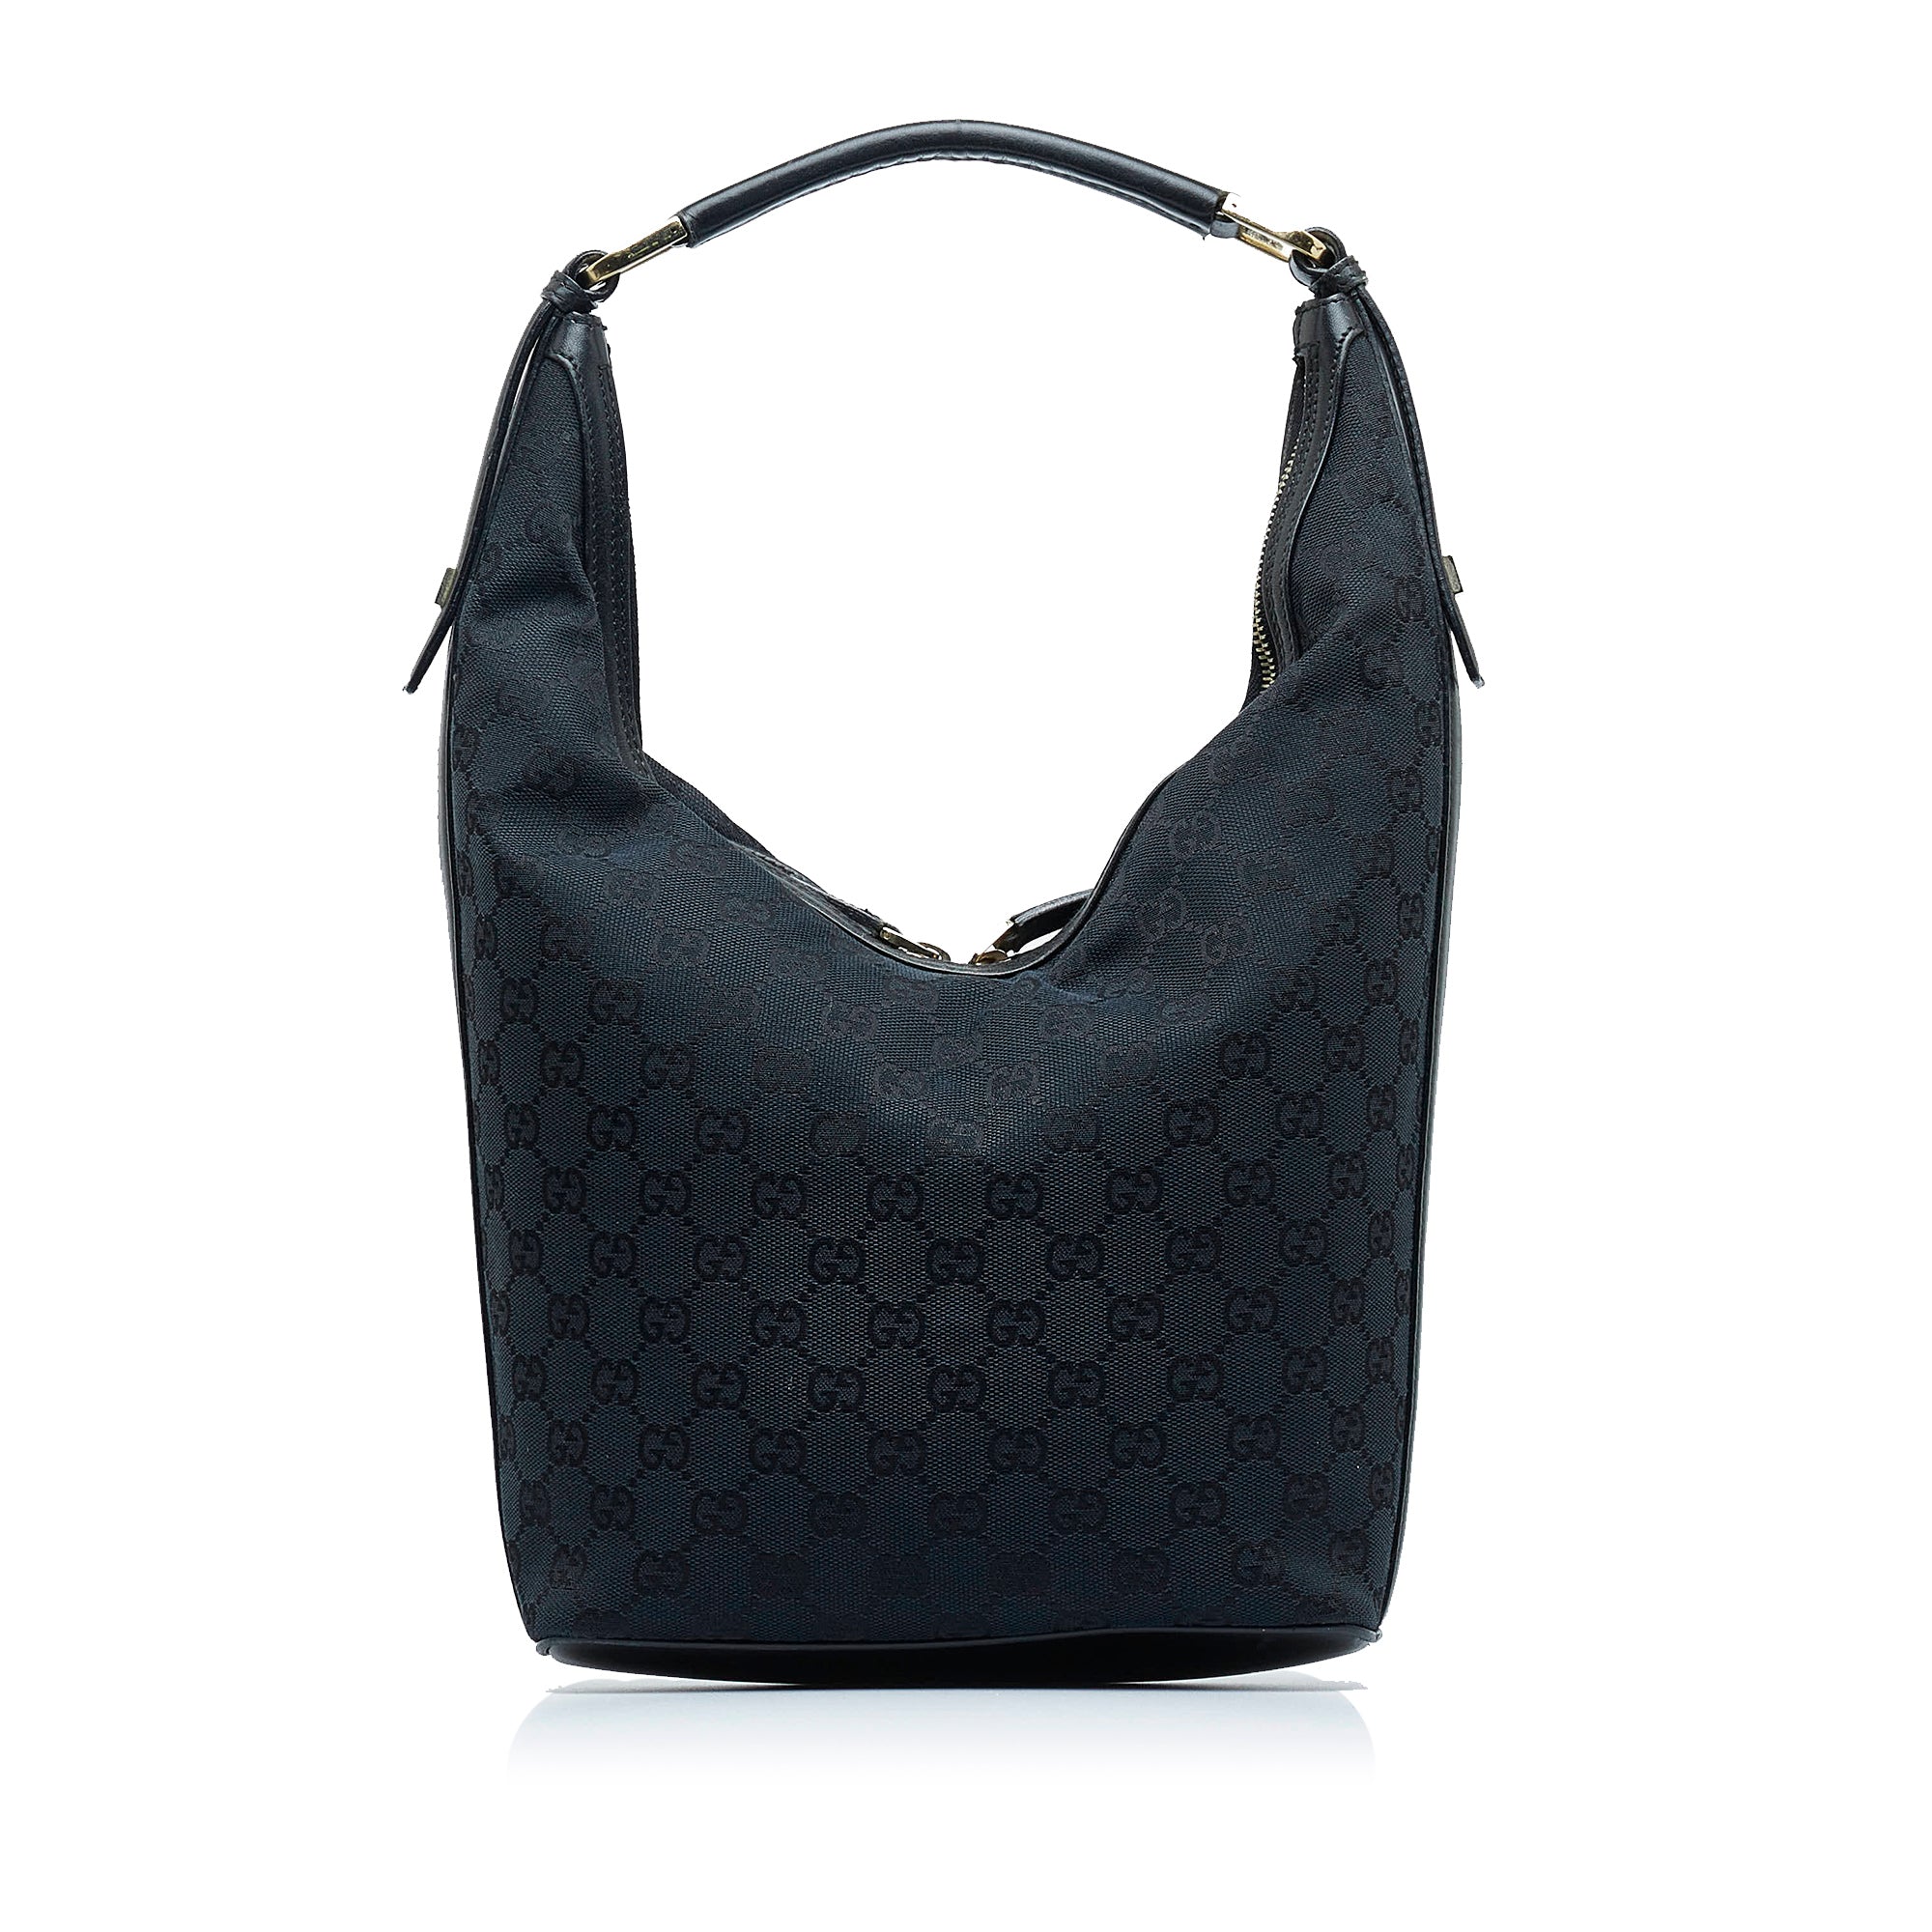 Gucci black monogram GG canvas hobo shoulder bag